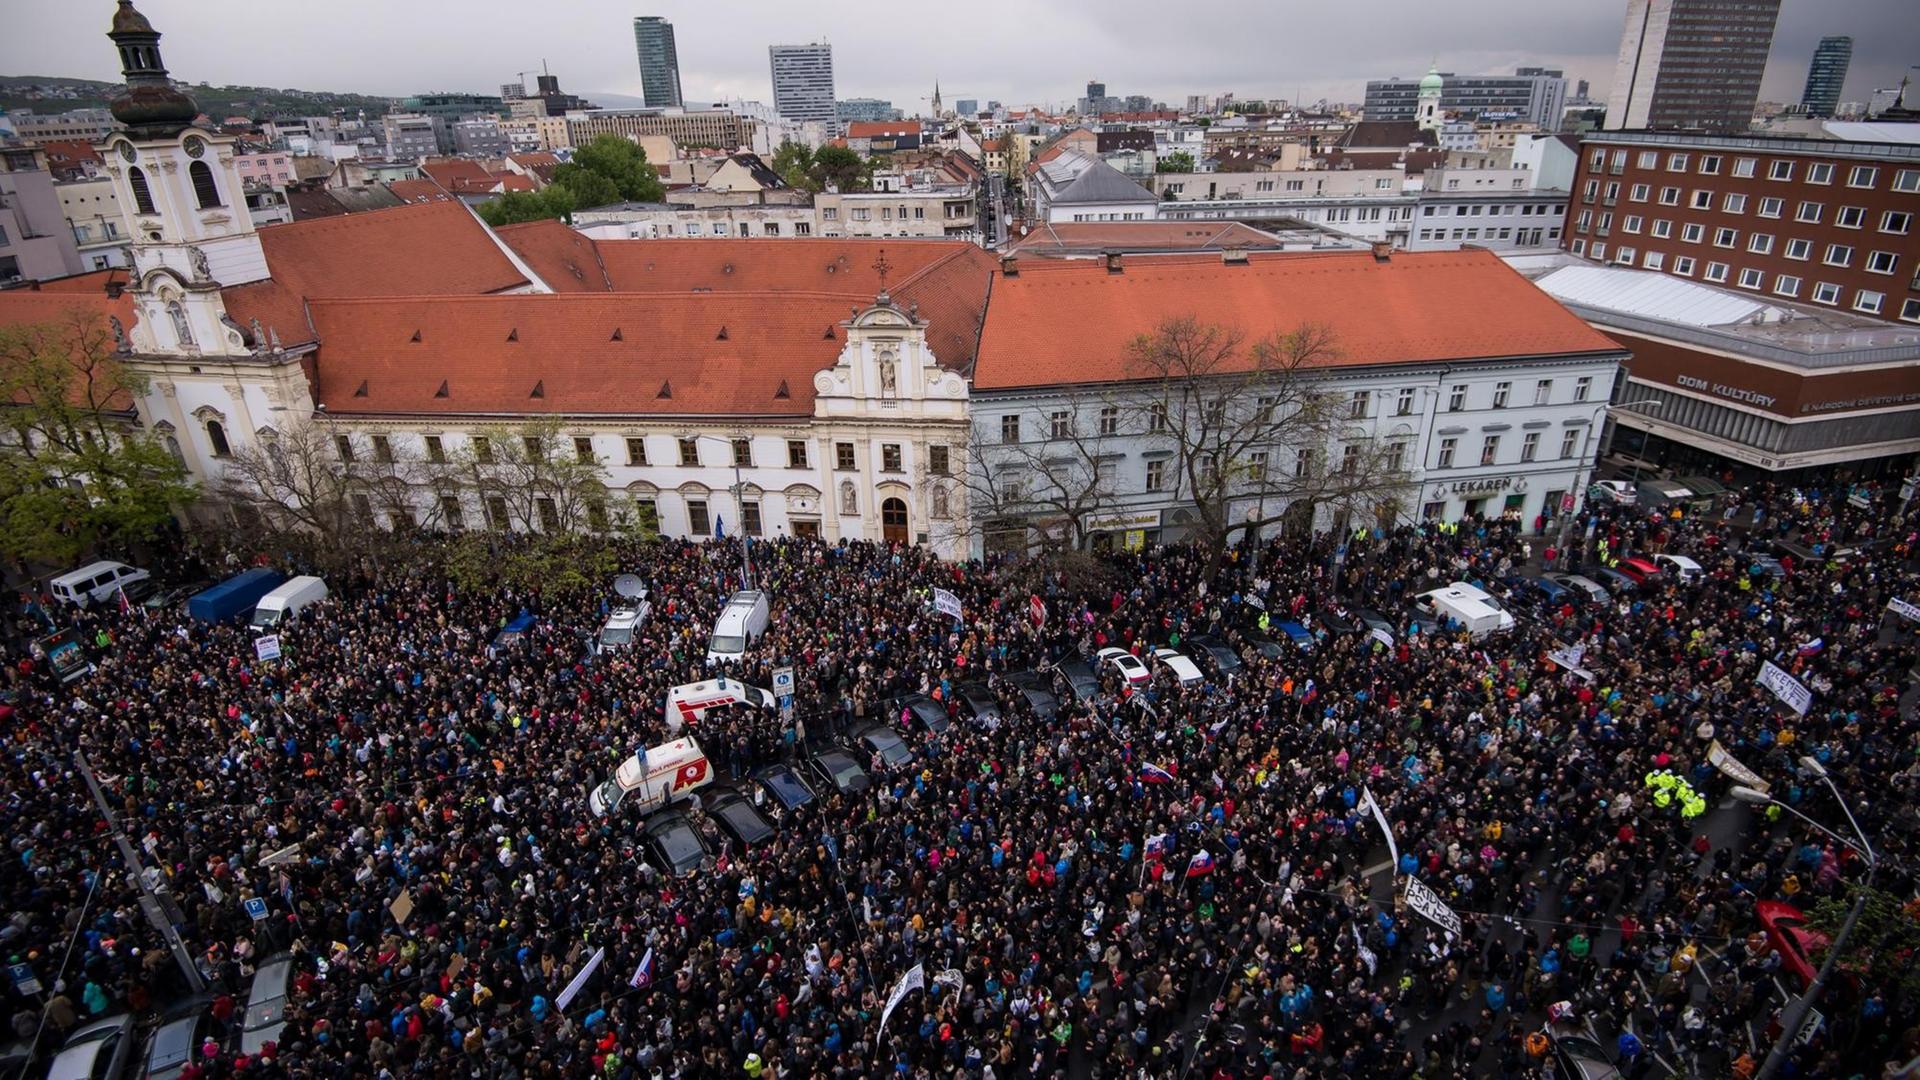 Demonstranten schwenken bei einem Protest gegen die Korruption in der Slowakei in Bratislava slowakische Flaggen. Organisiert hatten den Protestmarsch Schüler. Sie fordern den Rücktritt von Innenminister Robert Kalinak, Polizeipräsident Tibor Gaspar und Sonderstaatsanwalt Dusan Kovacik.